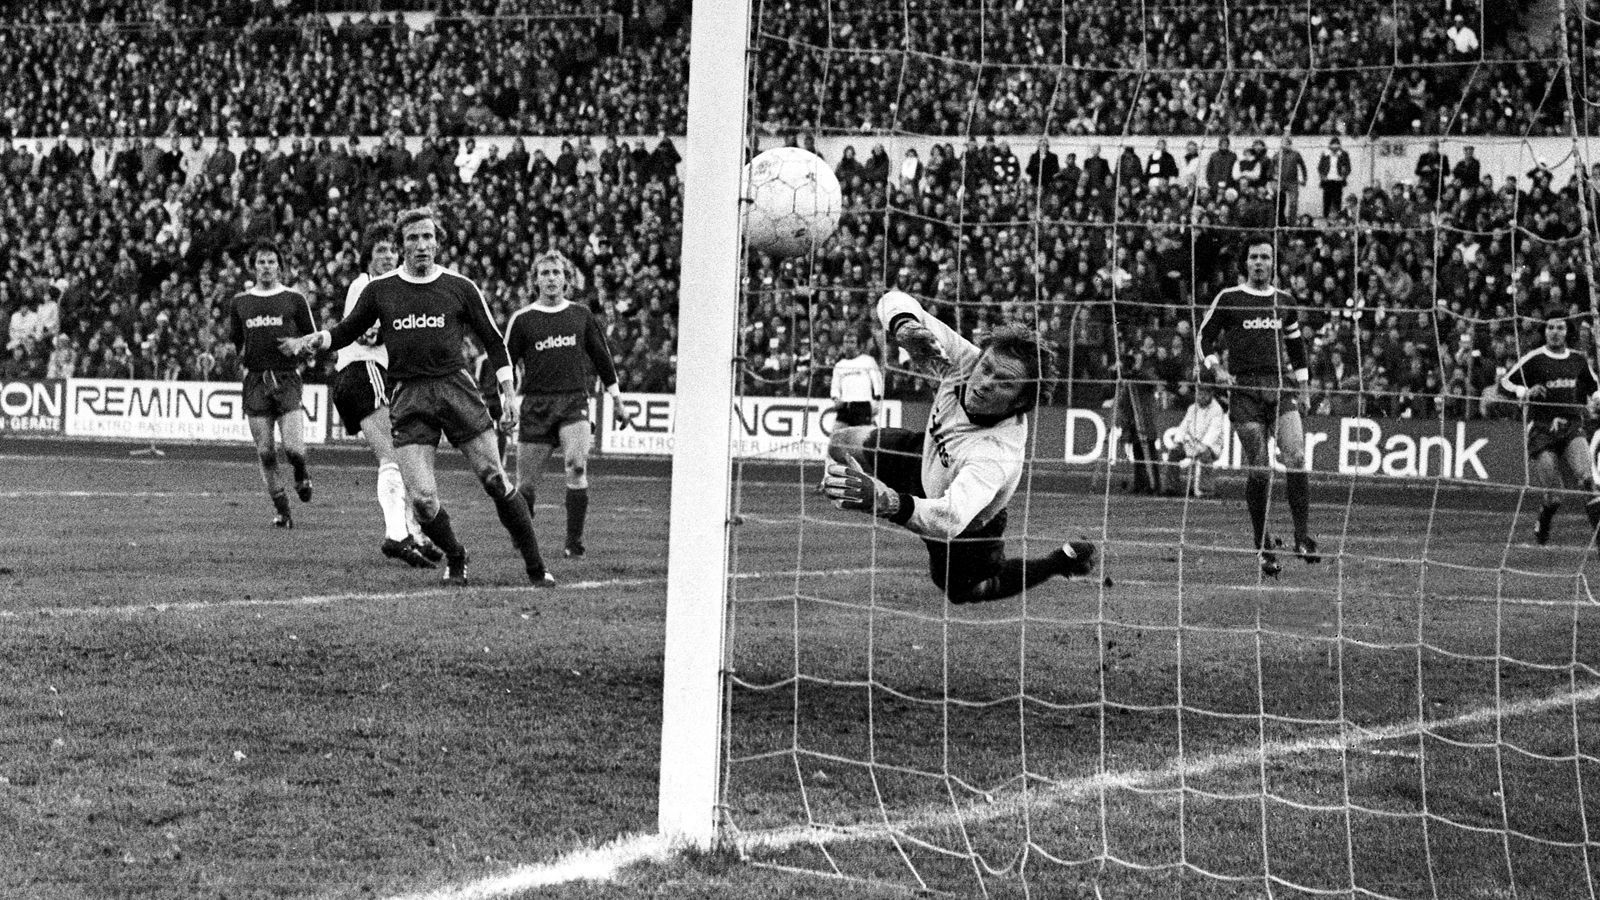 
                <strong>Eintracht Frankfurt - FC Bayern München 6:0 (1975/76)</strong><br>
                Am 22. November 1975 hatte der damalige Bayern-Keeper Sepp Maier beim Auswärtsspiel bei Eintracht Frankfurt gleich sechs Mal das Nachsehen. Vor allem in der ersten Halbzeit musste der Weltmeister von 1974 die Bälle regelmäßig aus dem Netz holen. Halbzeitstand: 5:0 für Frankfurt. Nach gut einer Stunde sorgte Bernd Nickel per direkt verwandeltem Freistoß für den 6:0-Endstand und ein weiteres Debakel in der Bundesliga-Historie des FC Bayern.
              